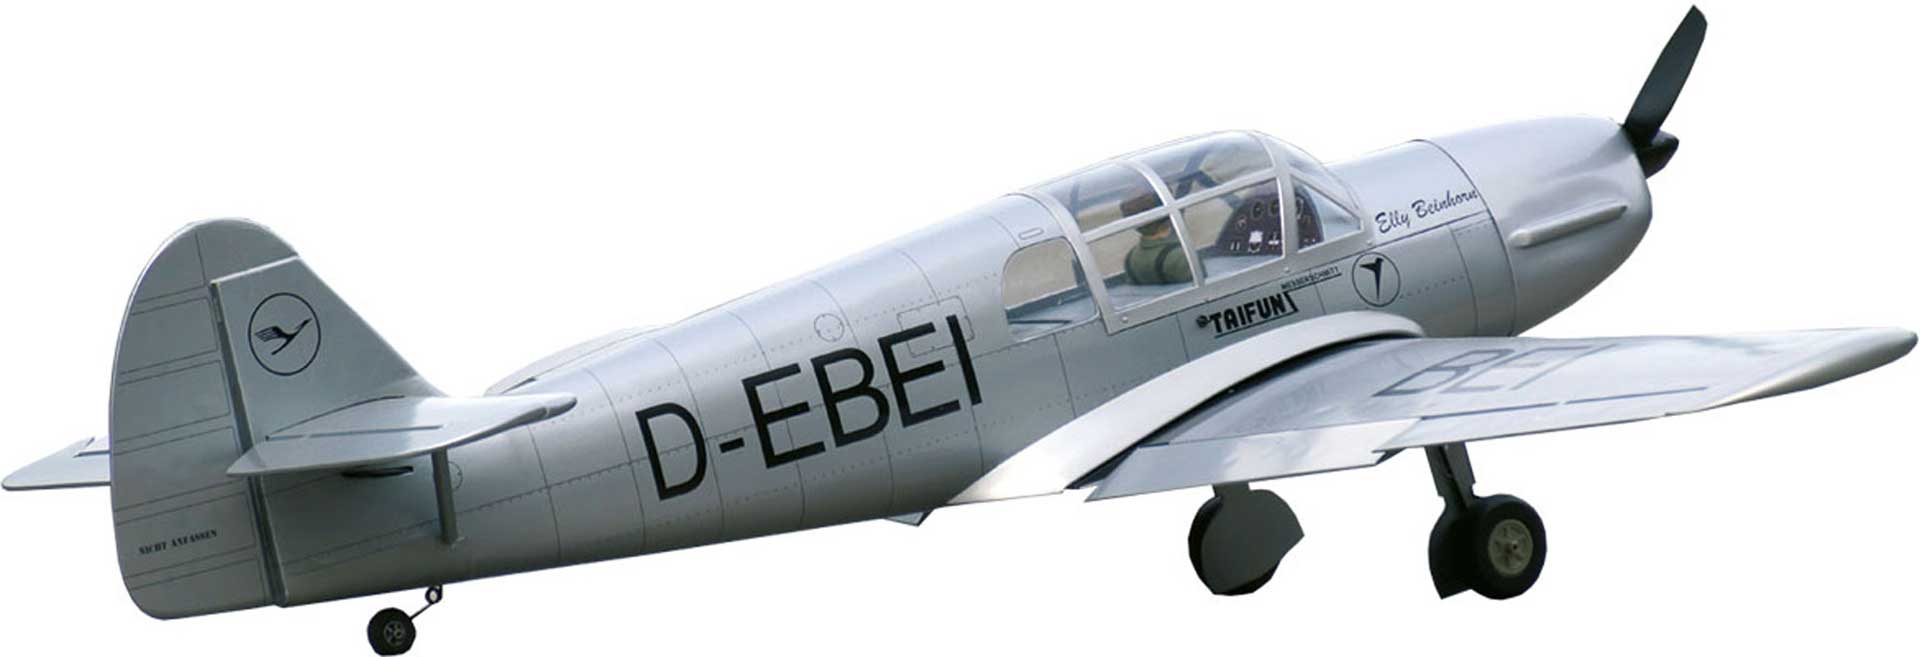 VQ Models MESSERSCHMITT BF-108 TAIFUN ARF "ELLY BEINHORN"